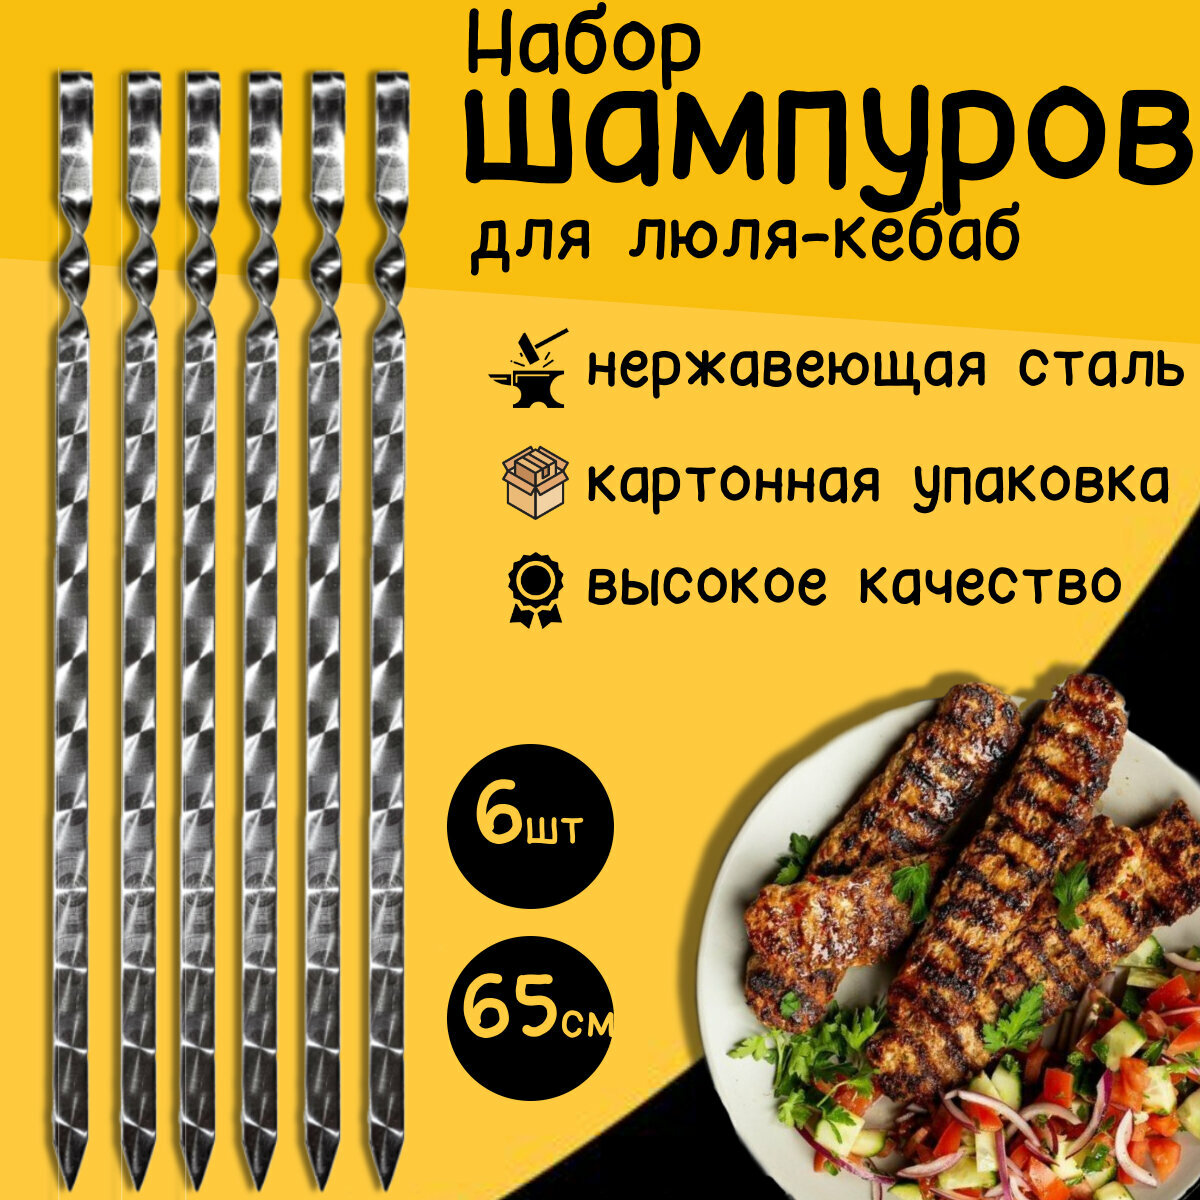 Шампуры для люля-кебаб 65 см 6 штук